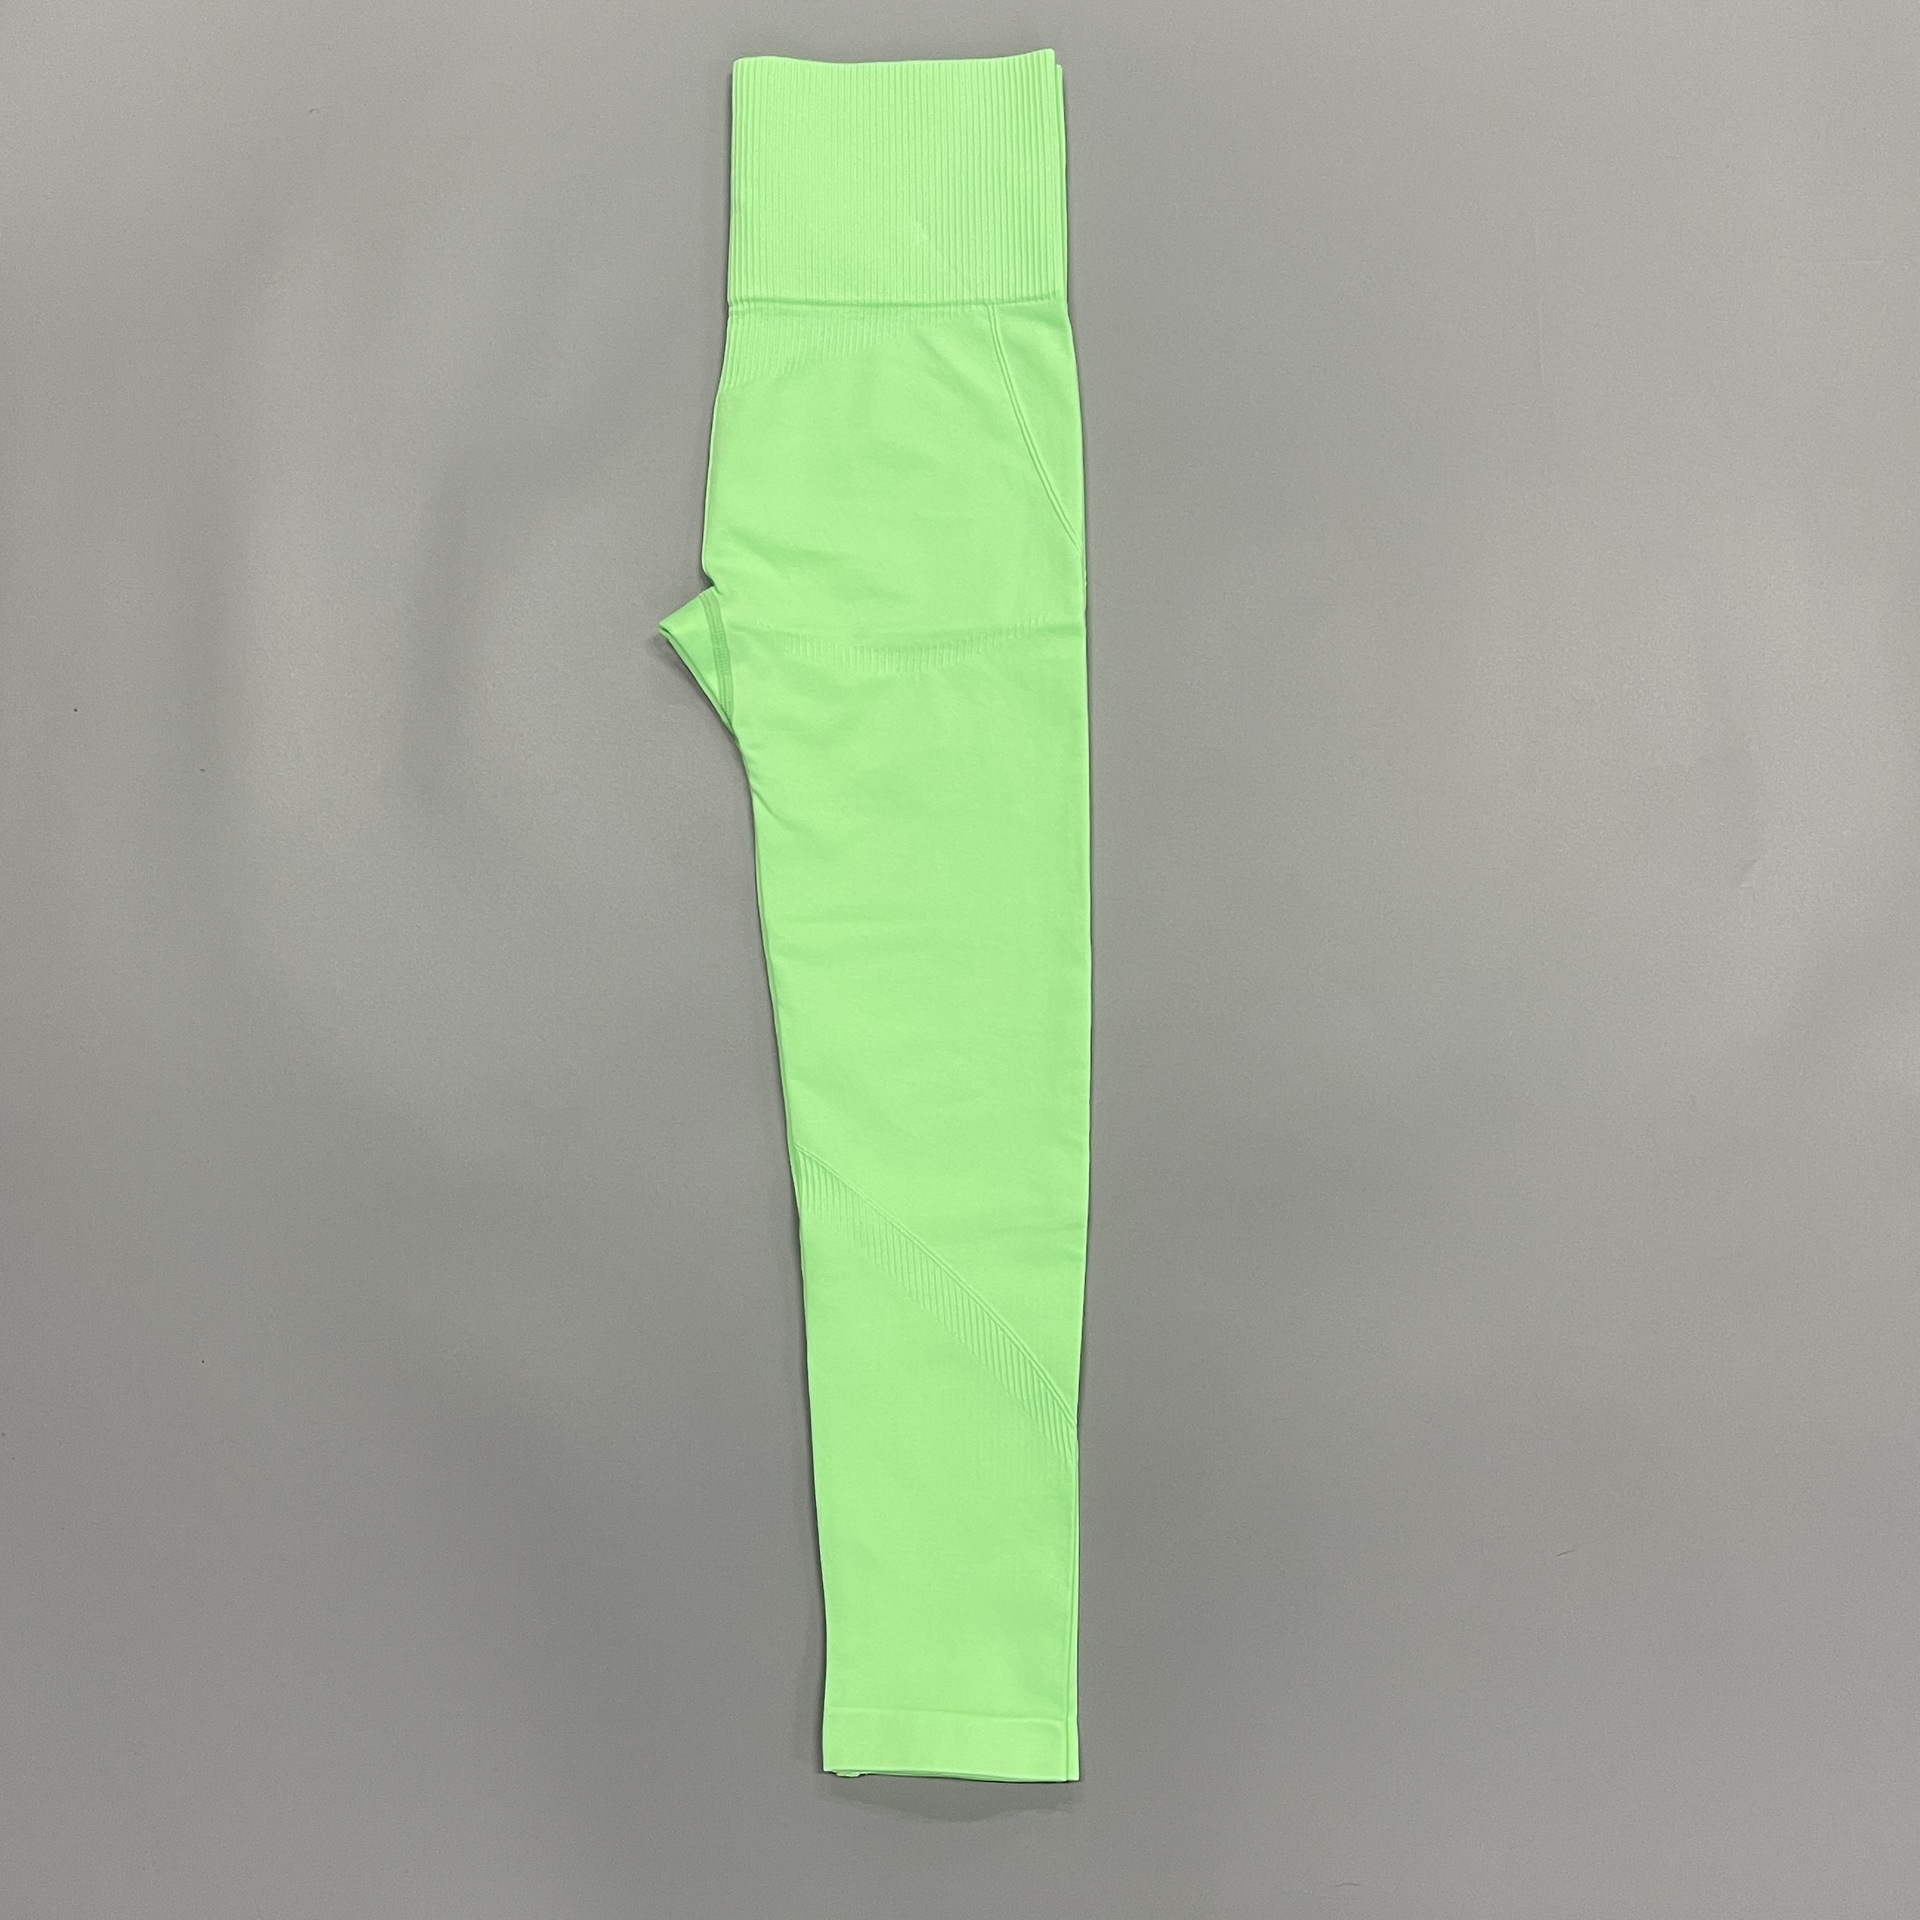 Fluorescent green pants